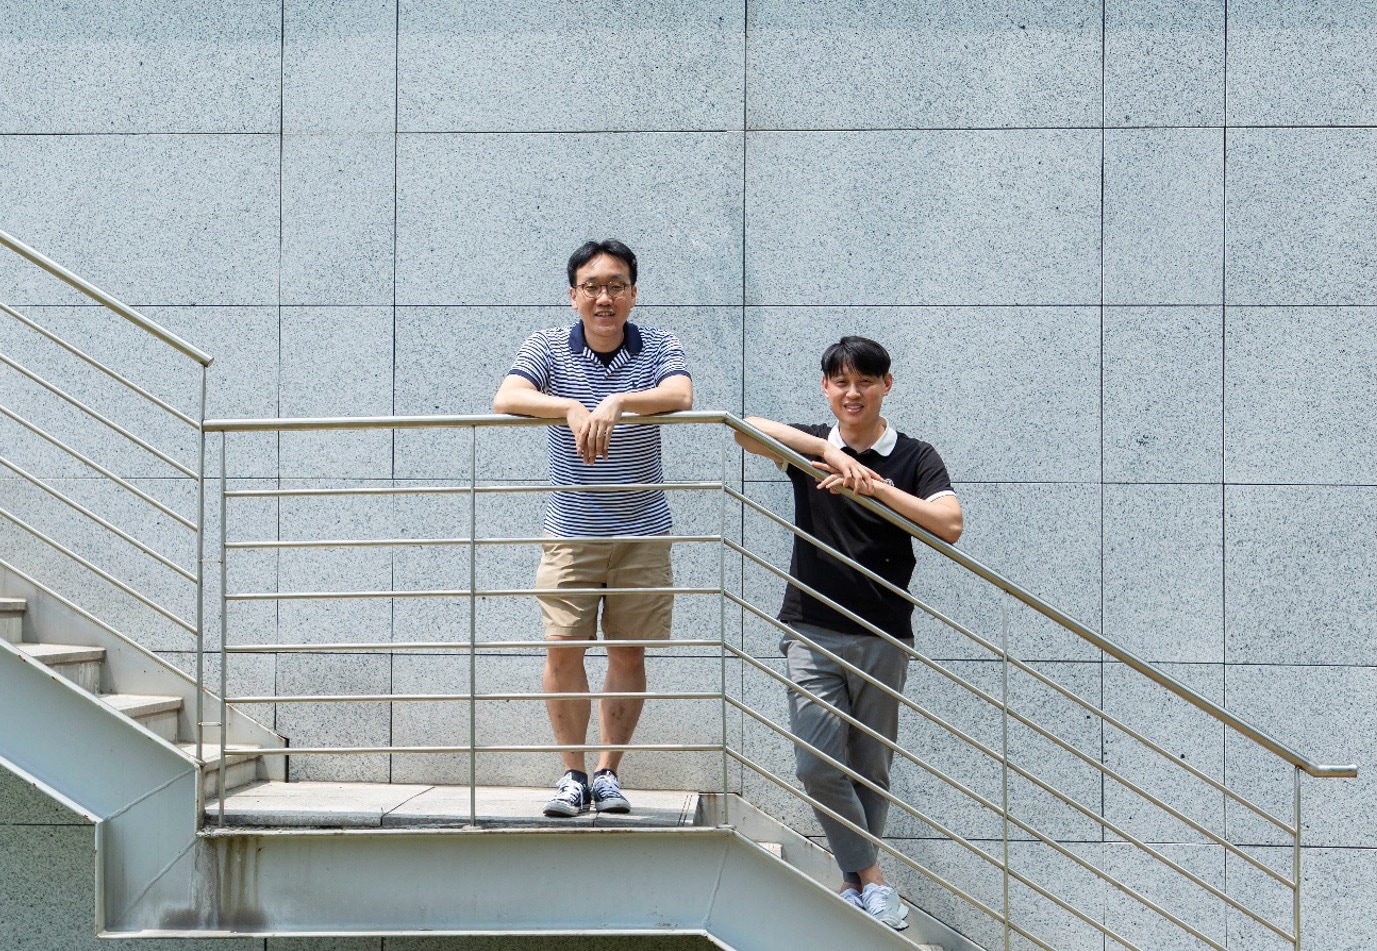 ▲ 三星半导体研发中心的 Sungsoo Choi（左），与负责开发 ISOCELL HP3 ，来自三星电子系统 LSI 业务高级传感器开发团队的 Myoungoh Ki。